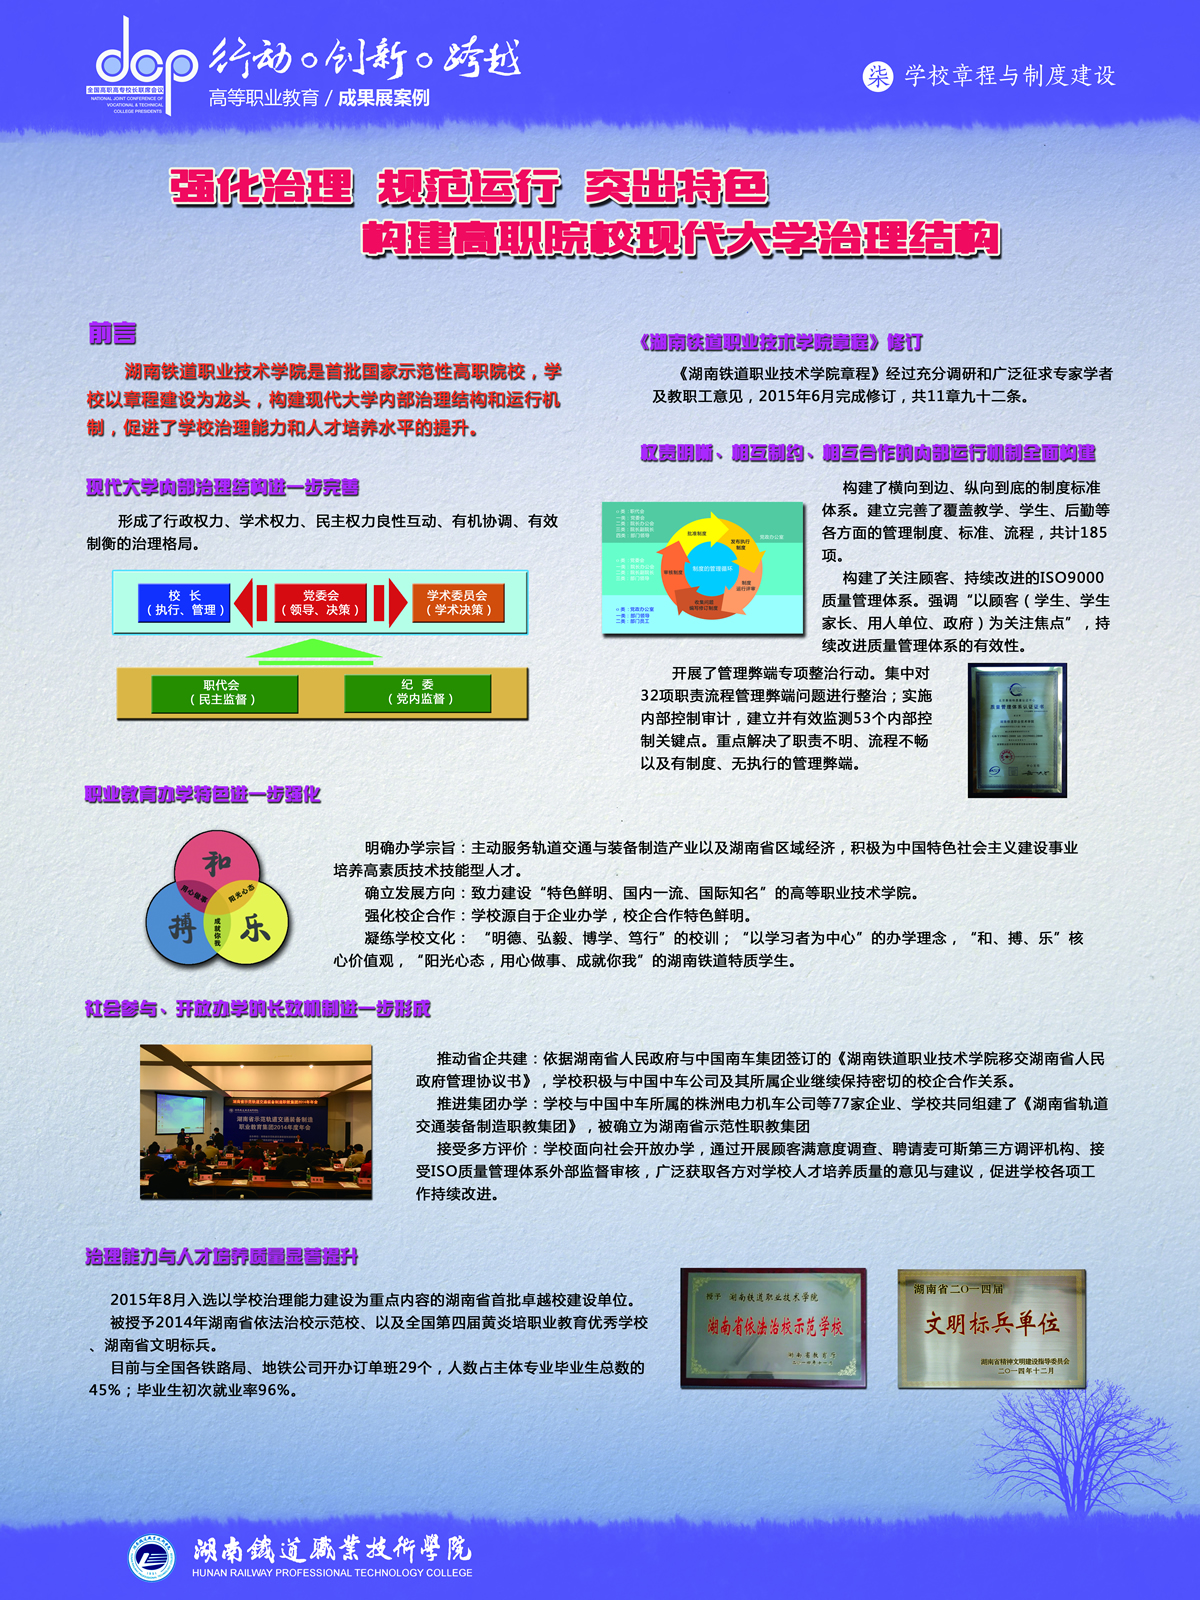 湖南铁道职业技术学院+宣传展板+学校章程与制度建设.jpg